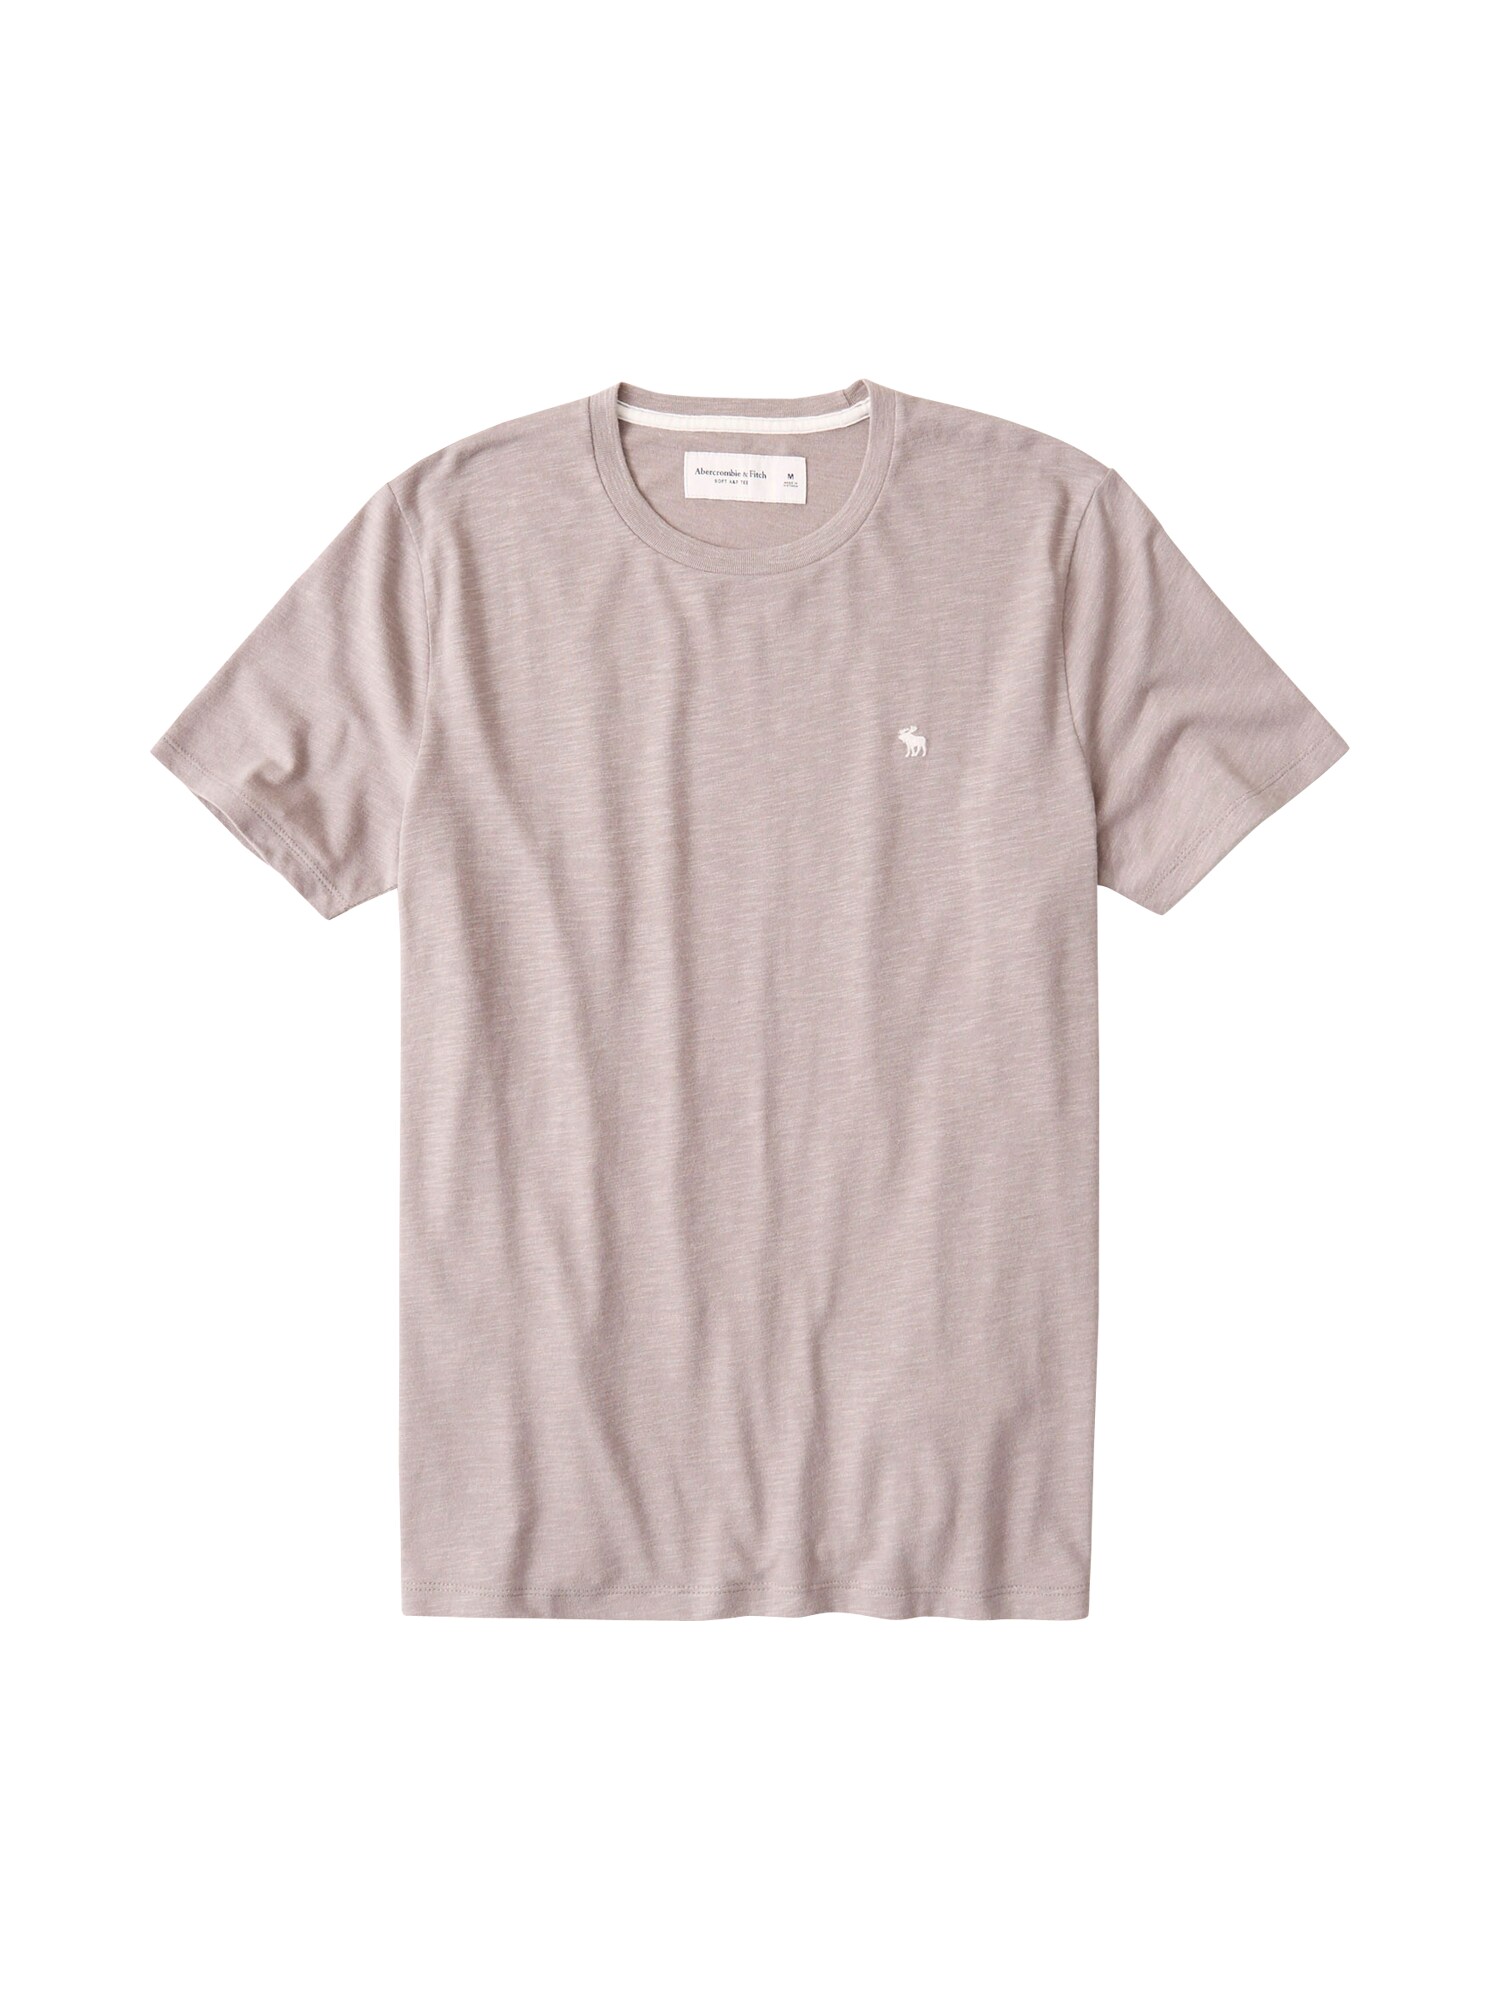 Abercrombie & Fitch Marškinėliai  gelsvai pilka spalva